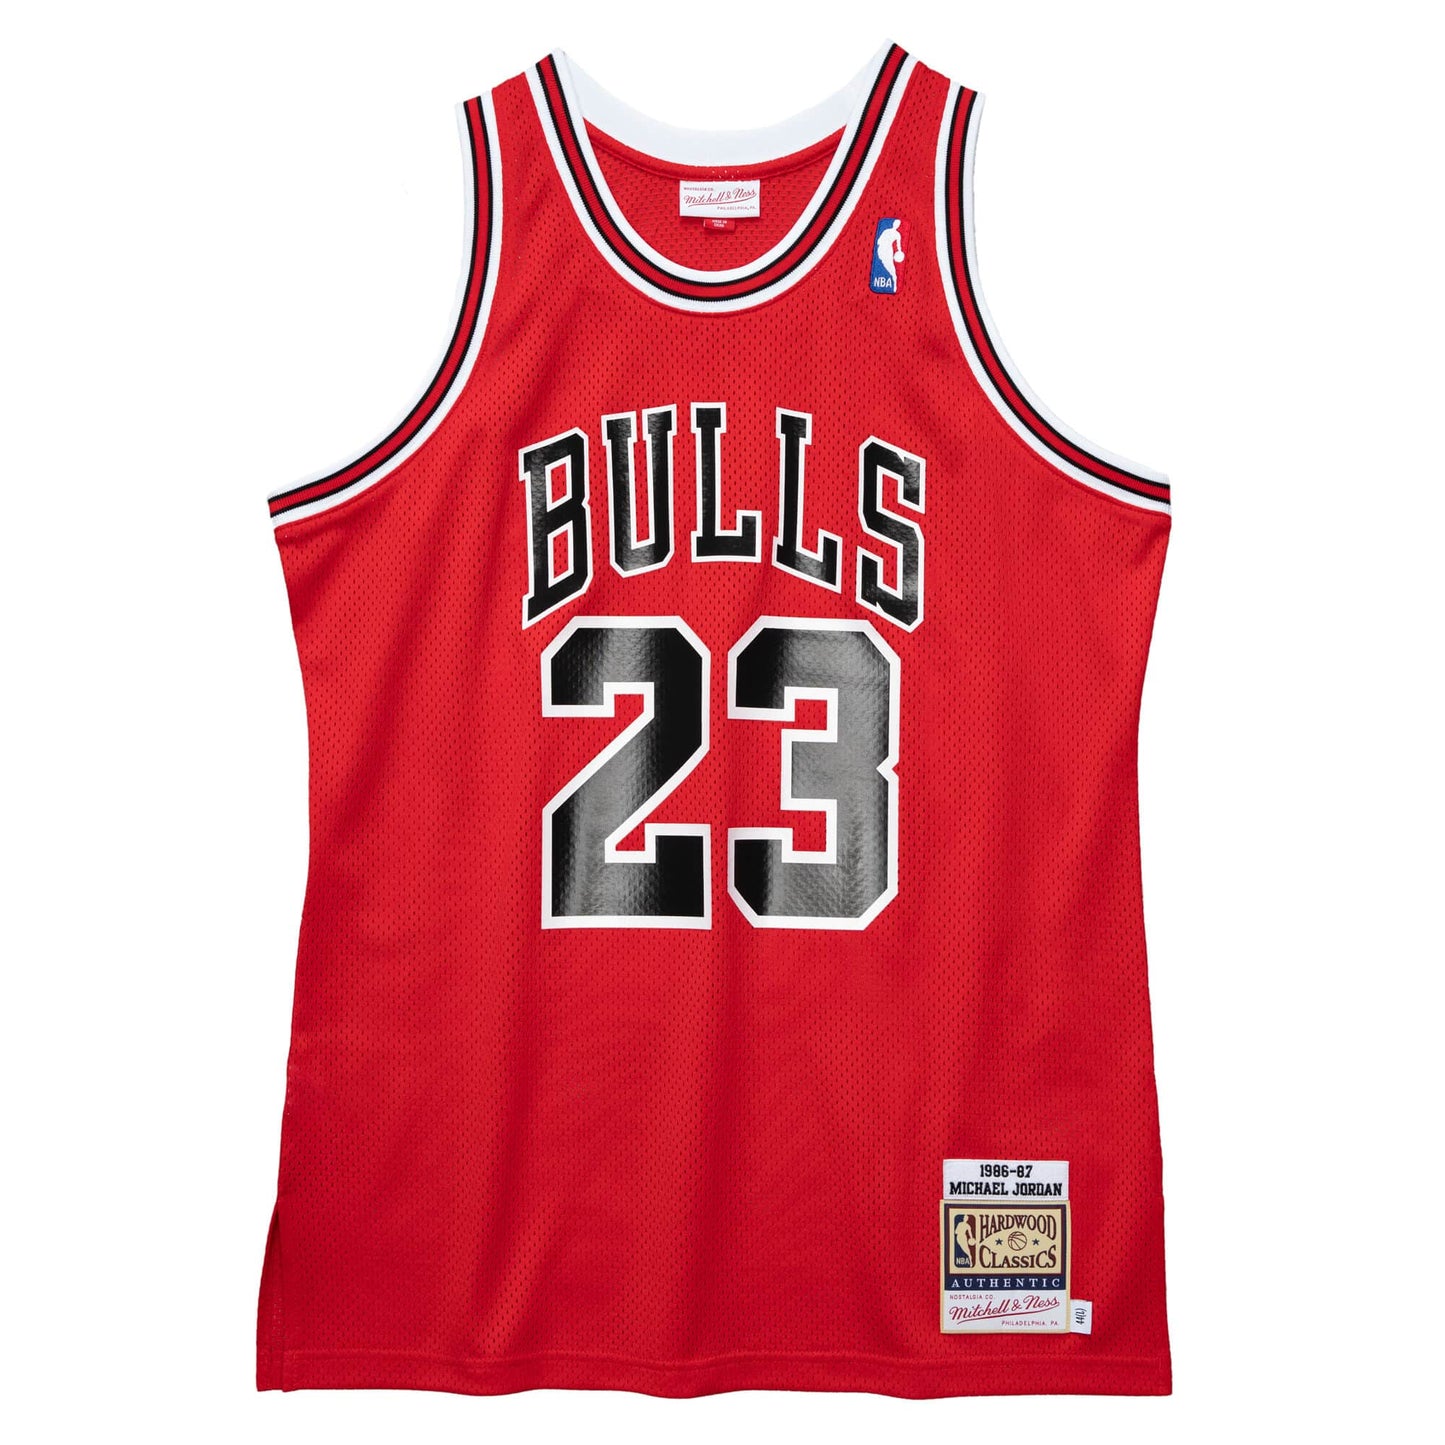 Authentic Michael Jordans Chicago Bulls 1986-87 Jersey